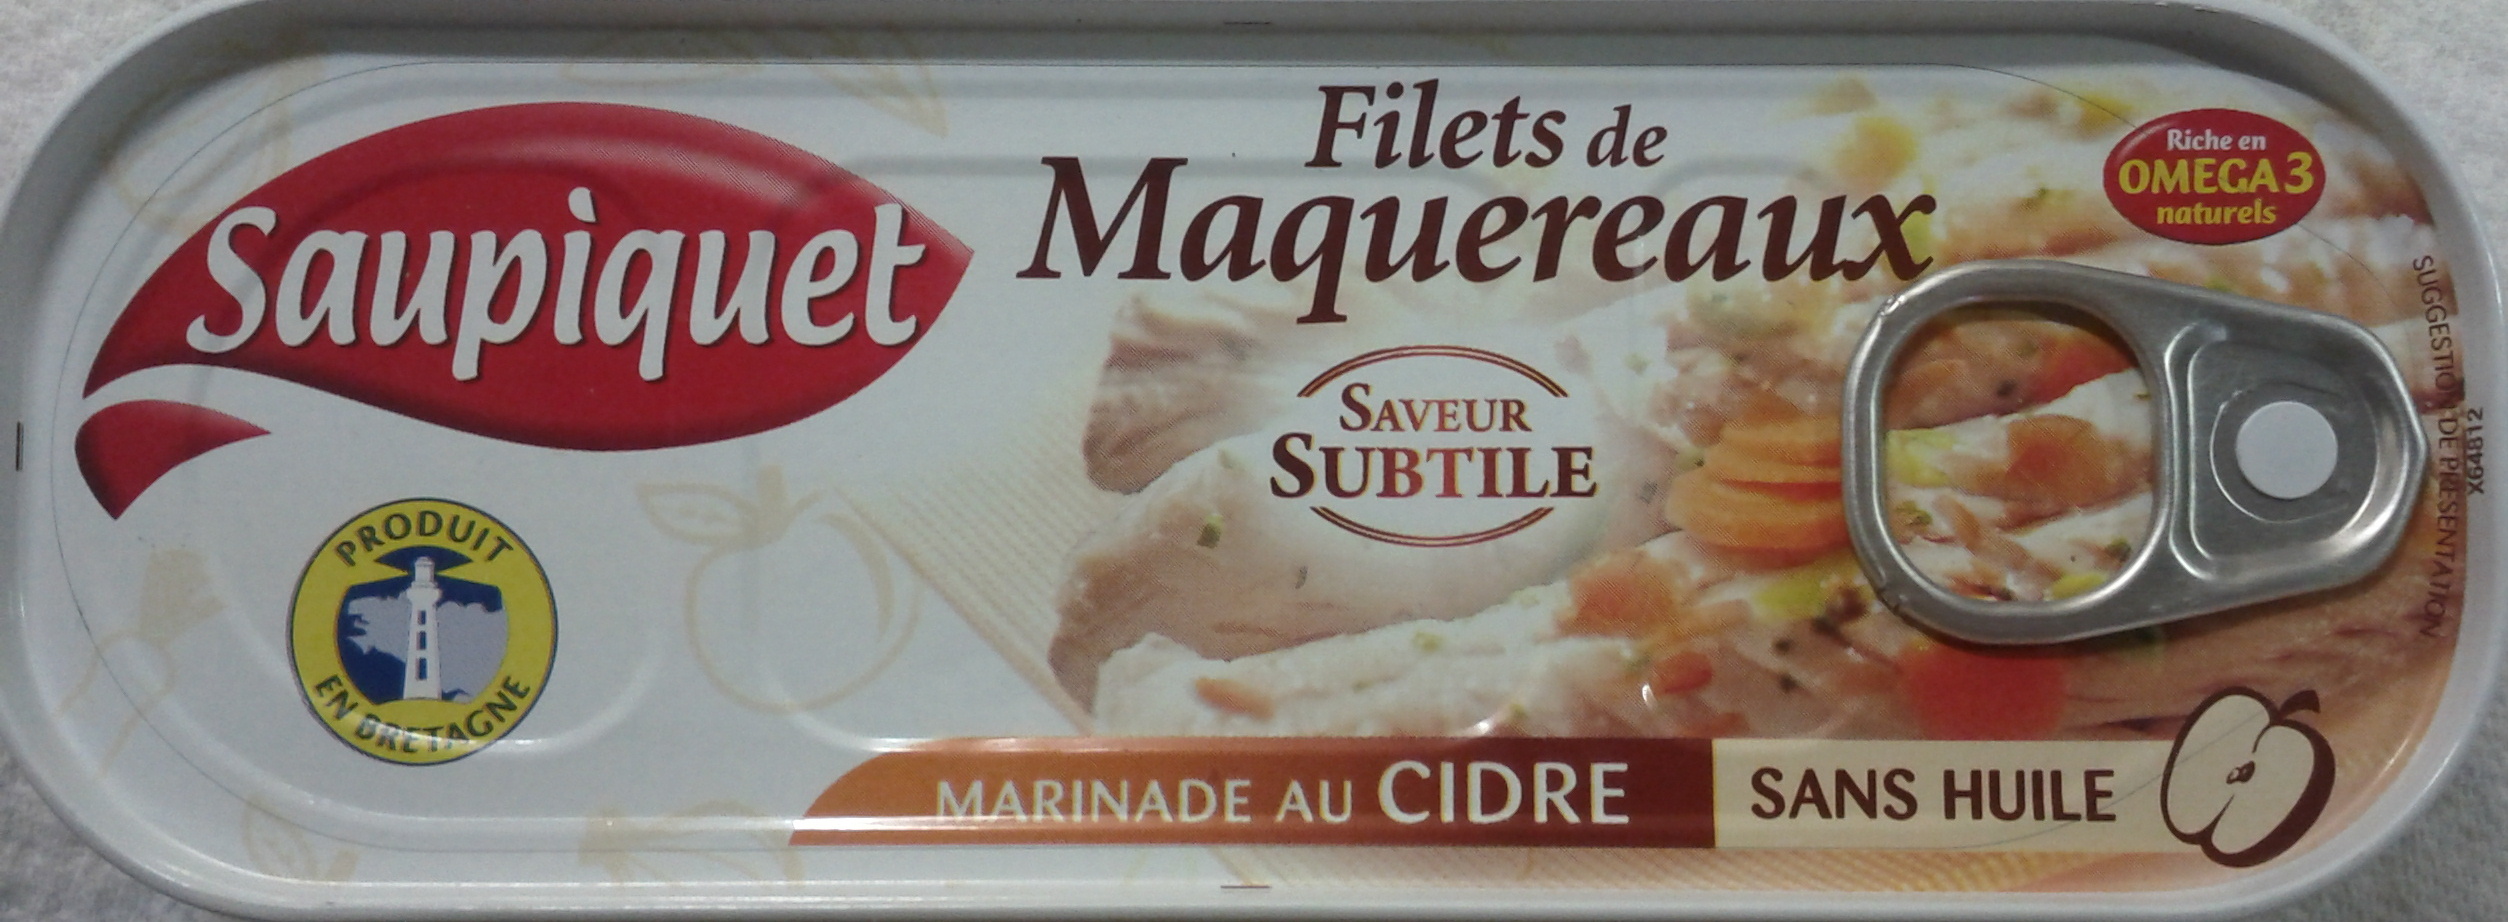 Filets de Maquereaux (Marinade au Cidre) - Produit